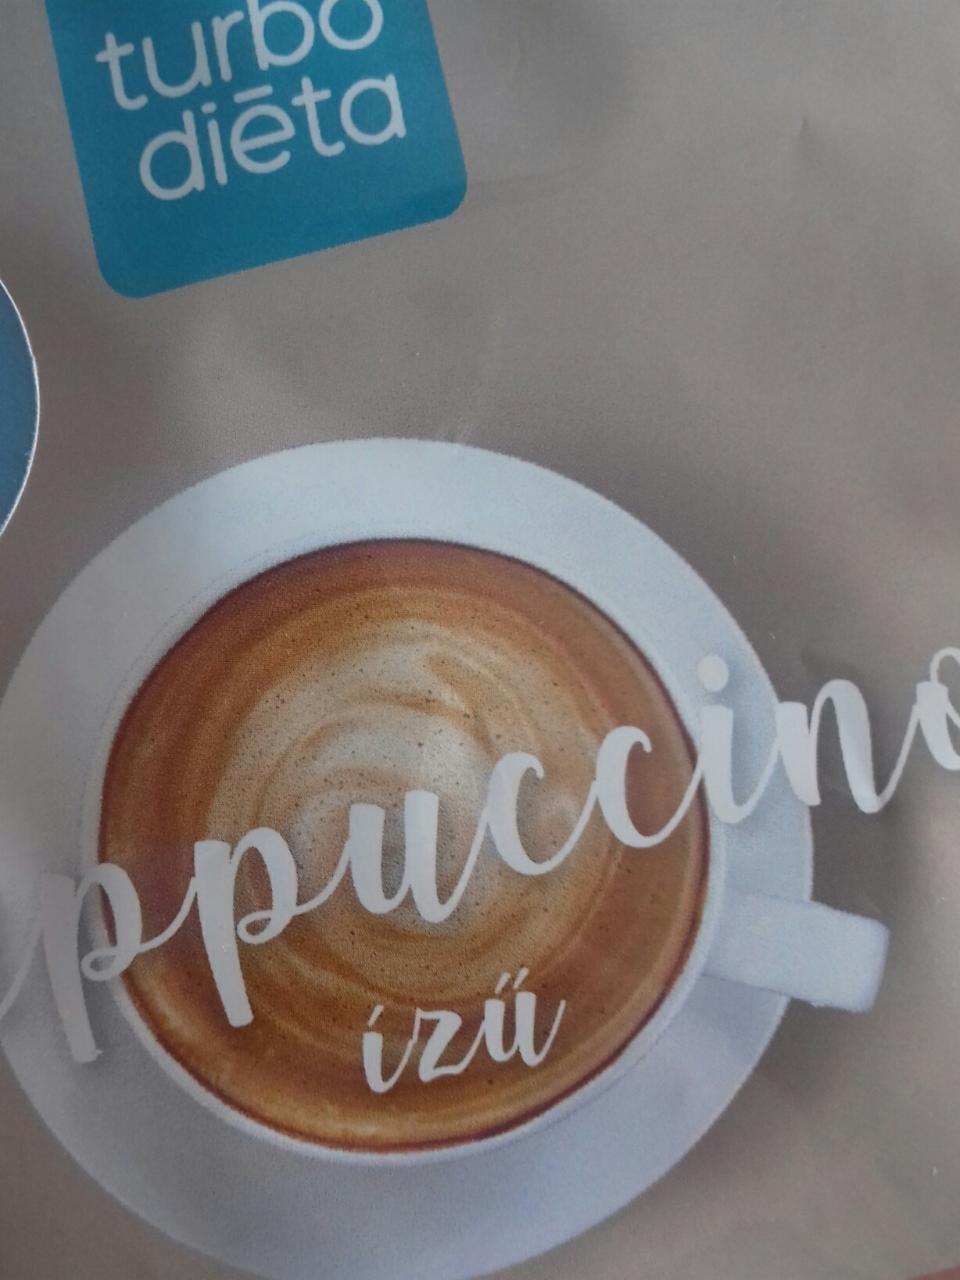 Képek - Turbó diéta cappuccino ízű turmixpor